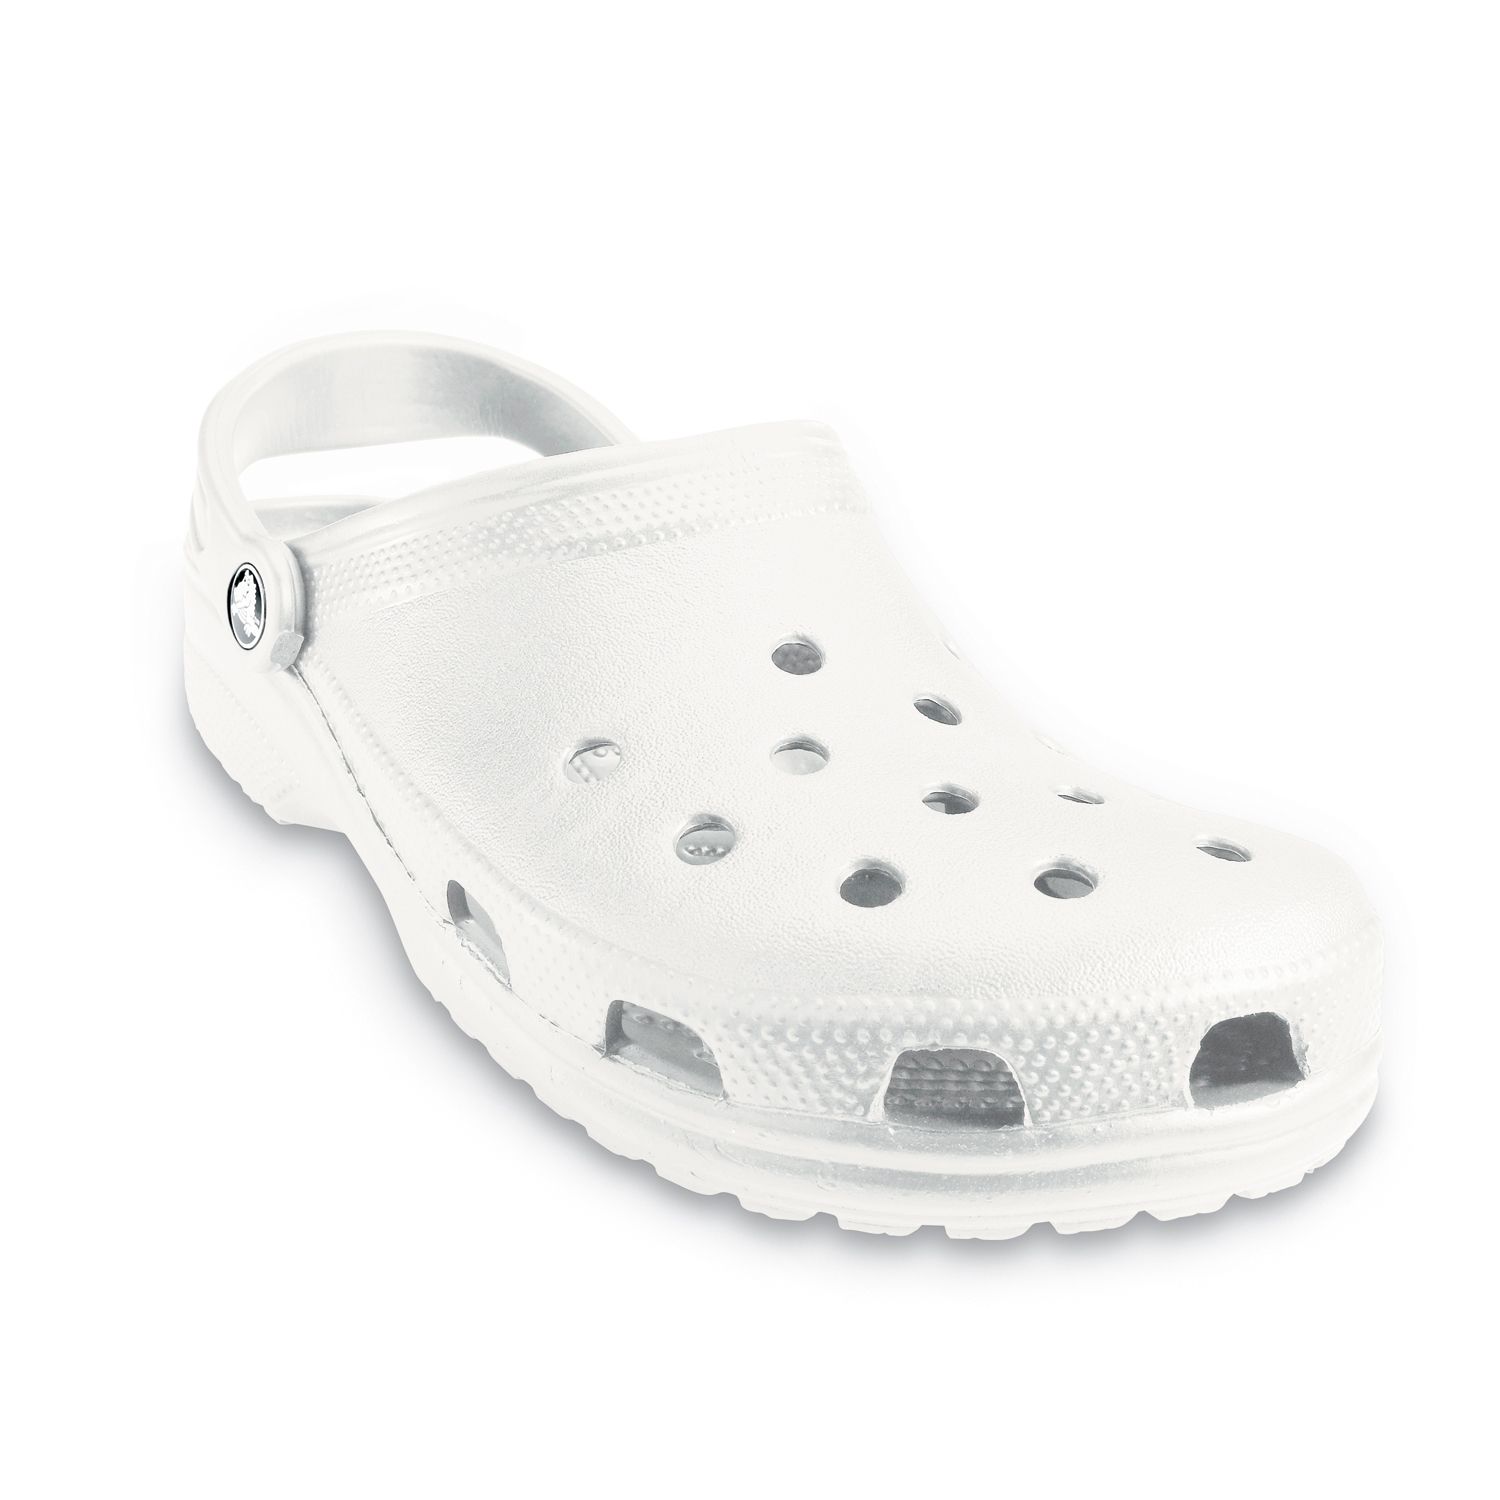 womens crocs white